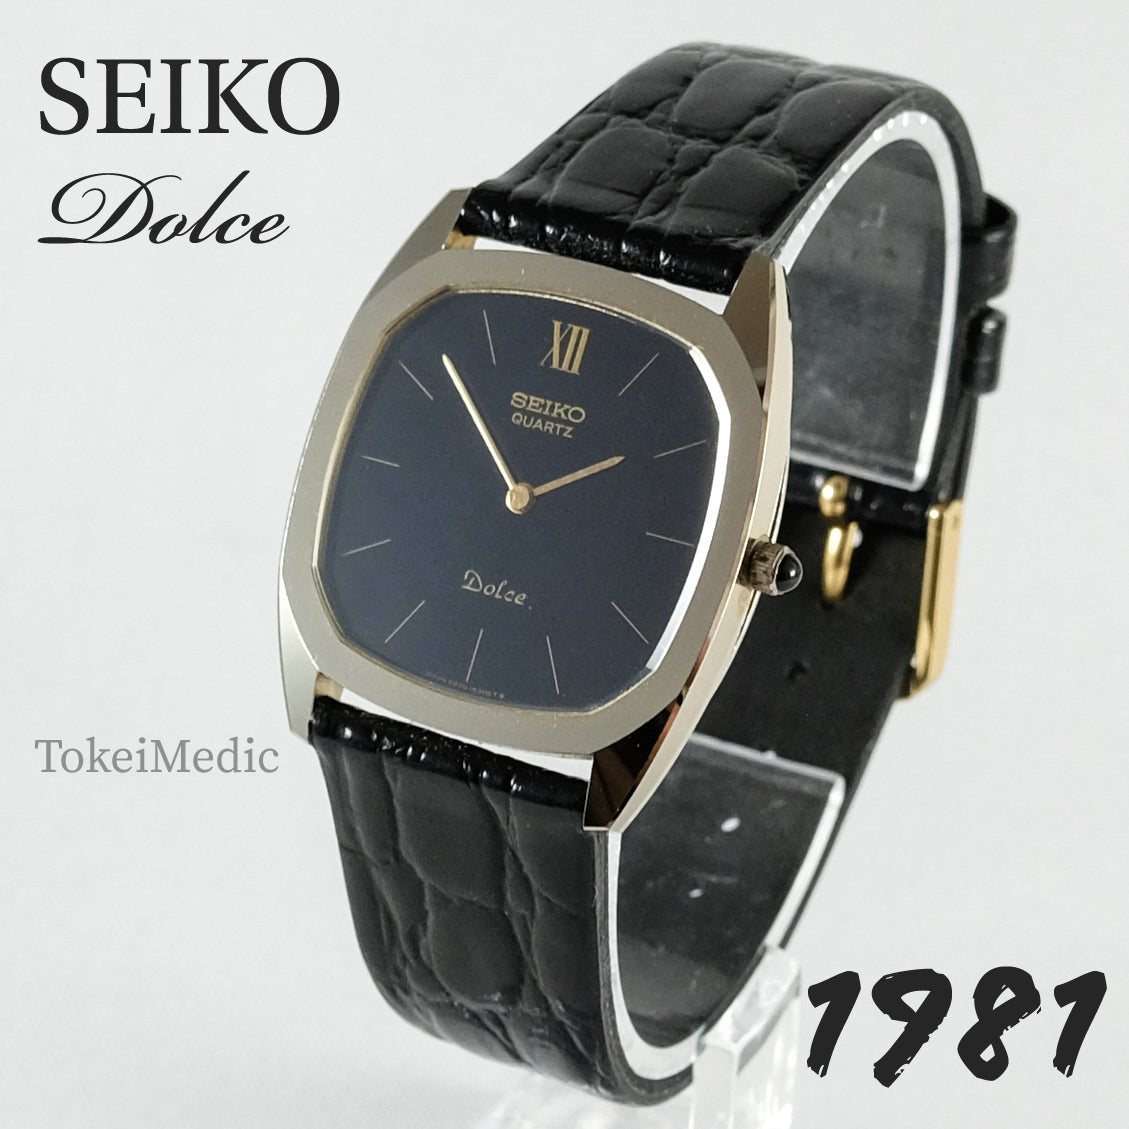 1981 Seiko Dolce 6020-5260